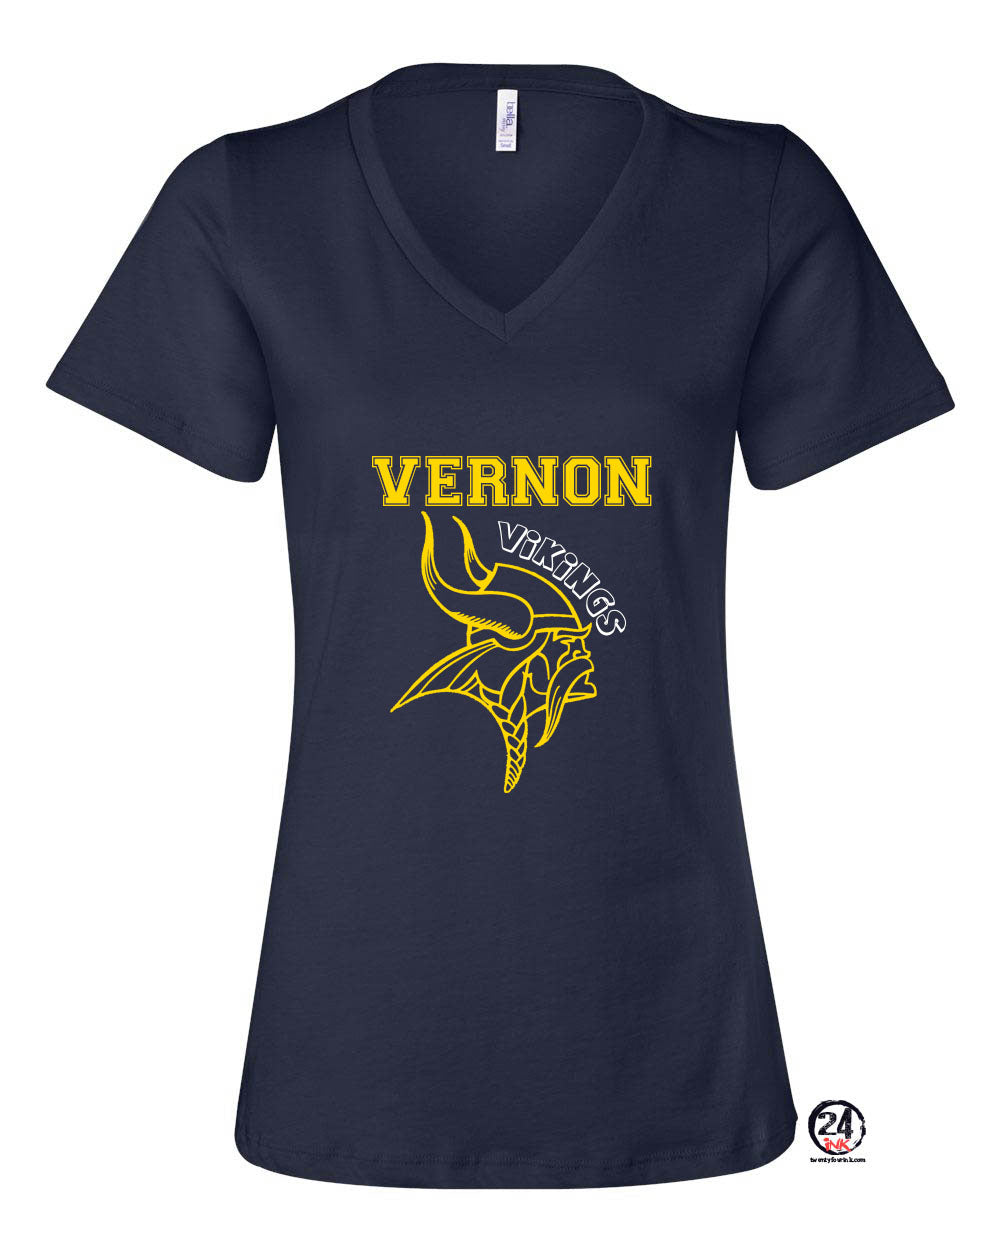 Vernon Design 6 V-neck T-shirt